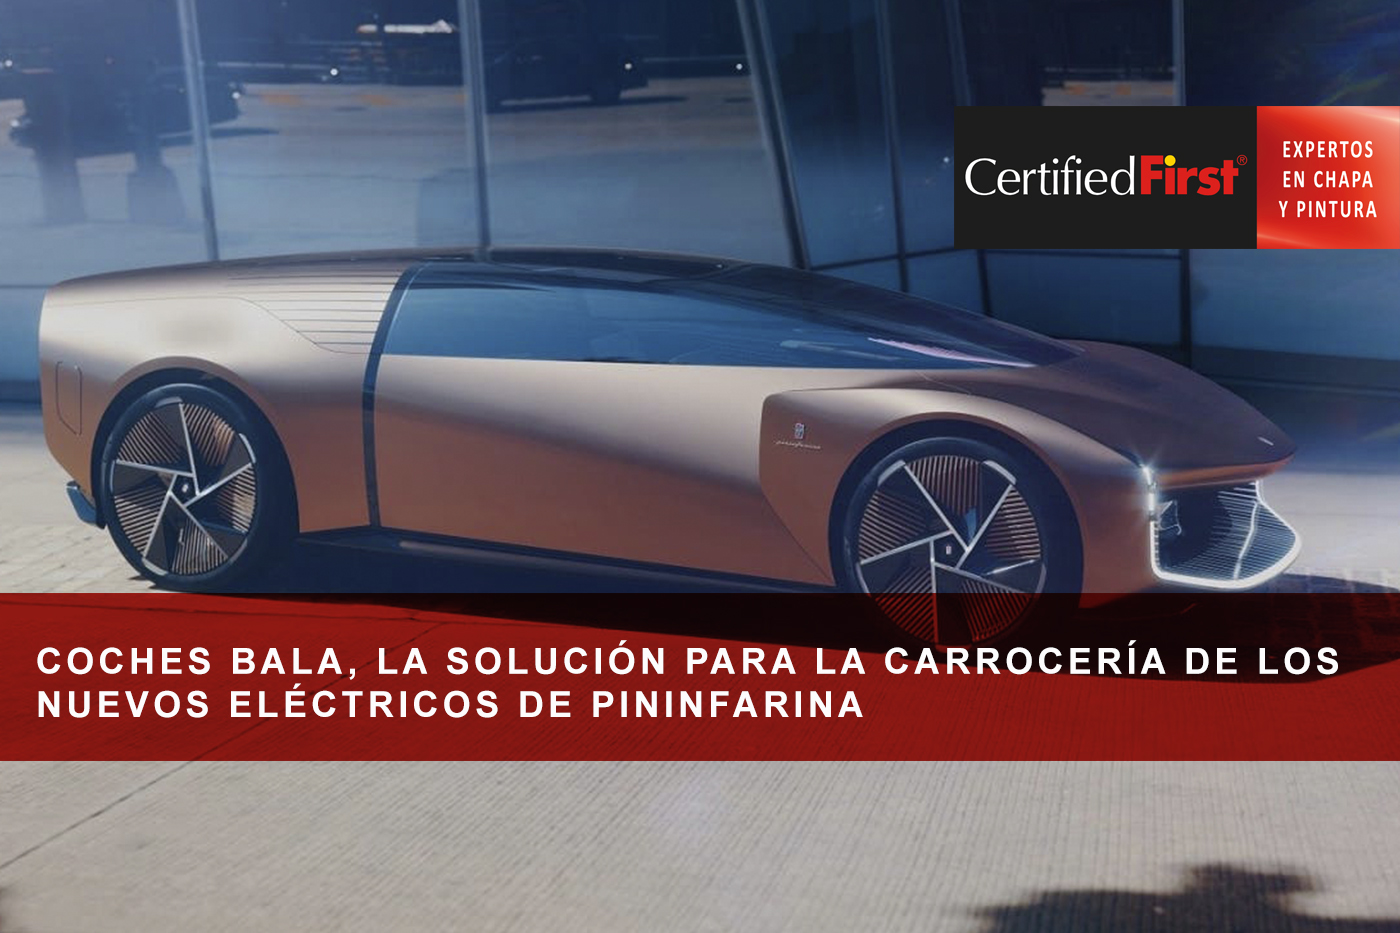 Coches bala, la solución para la carrocería de los nuevos eléctricos de Pininfarina